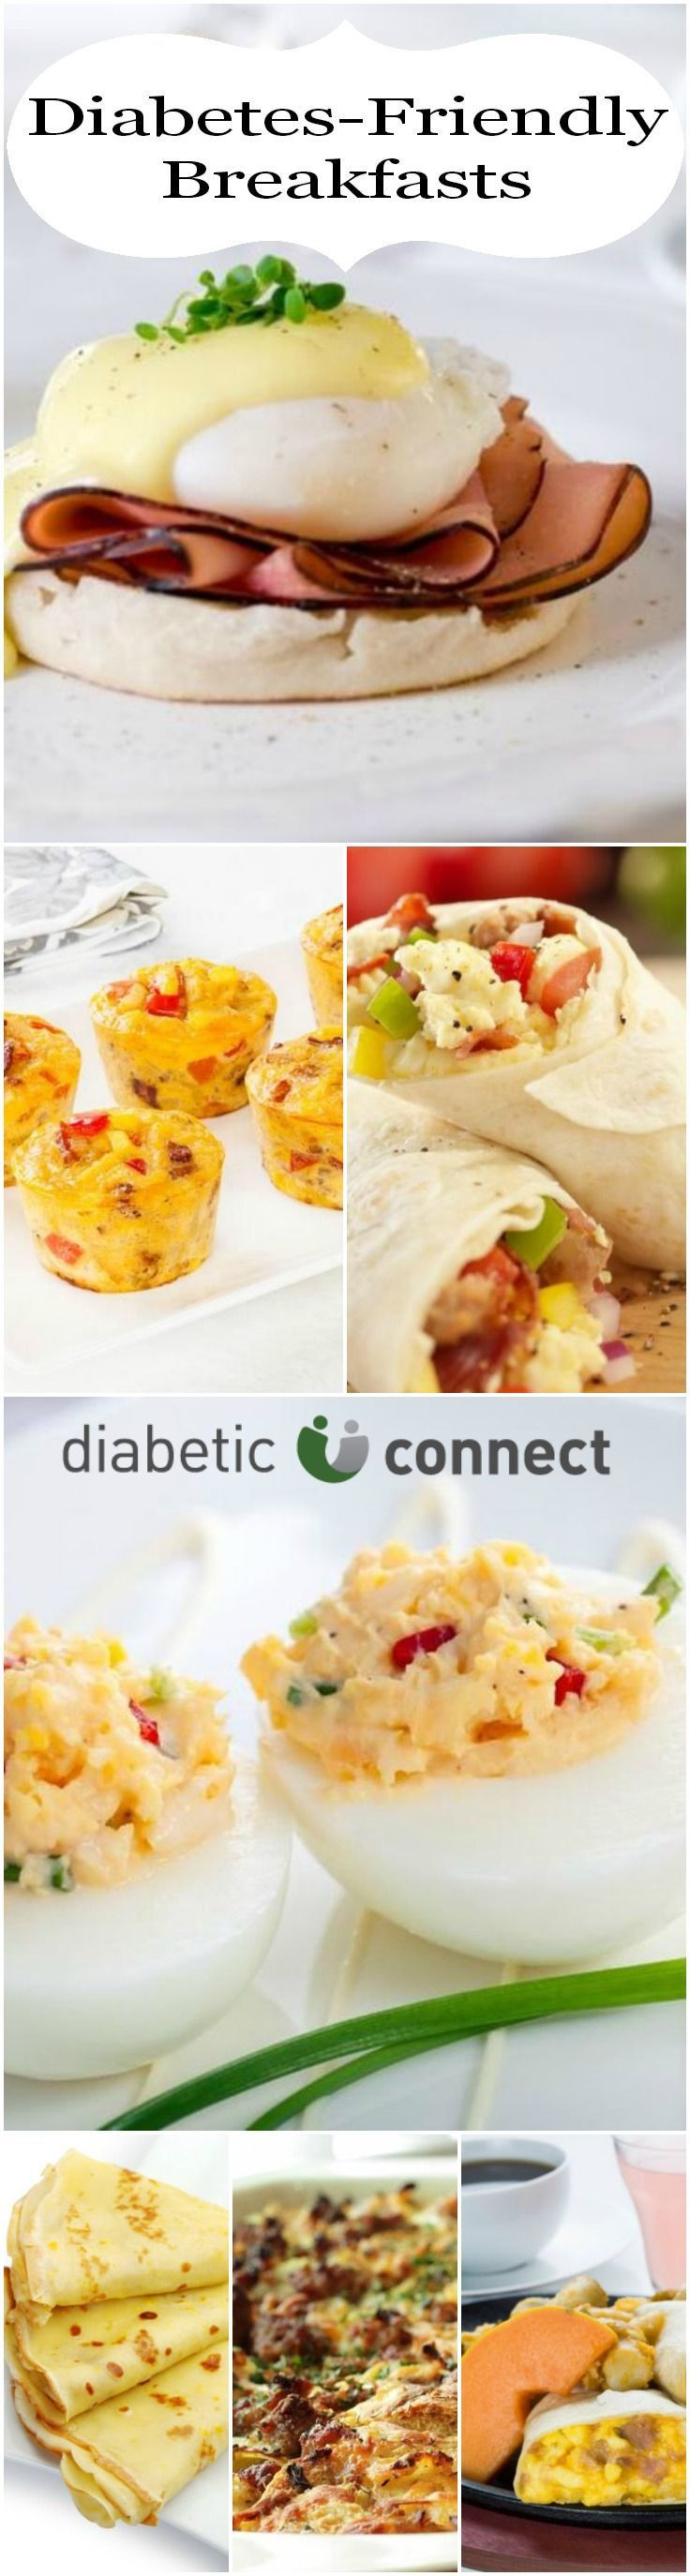 Diabetic Breakfast Recipes
 Diabetic breakfast ideas